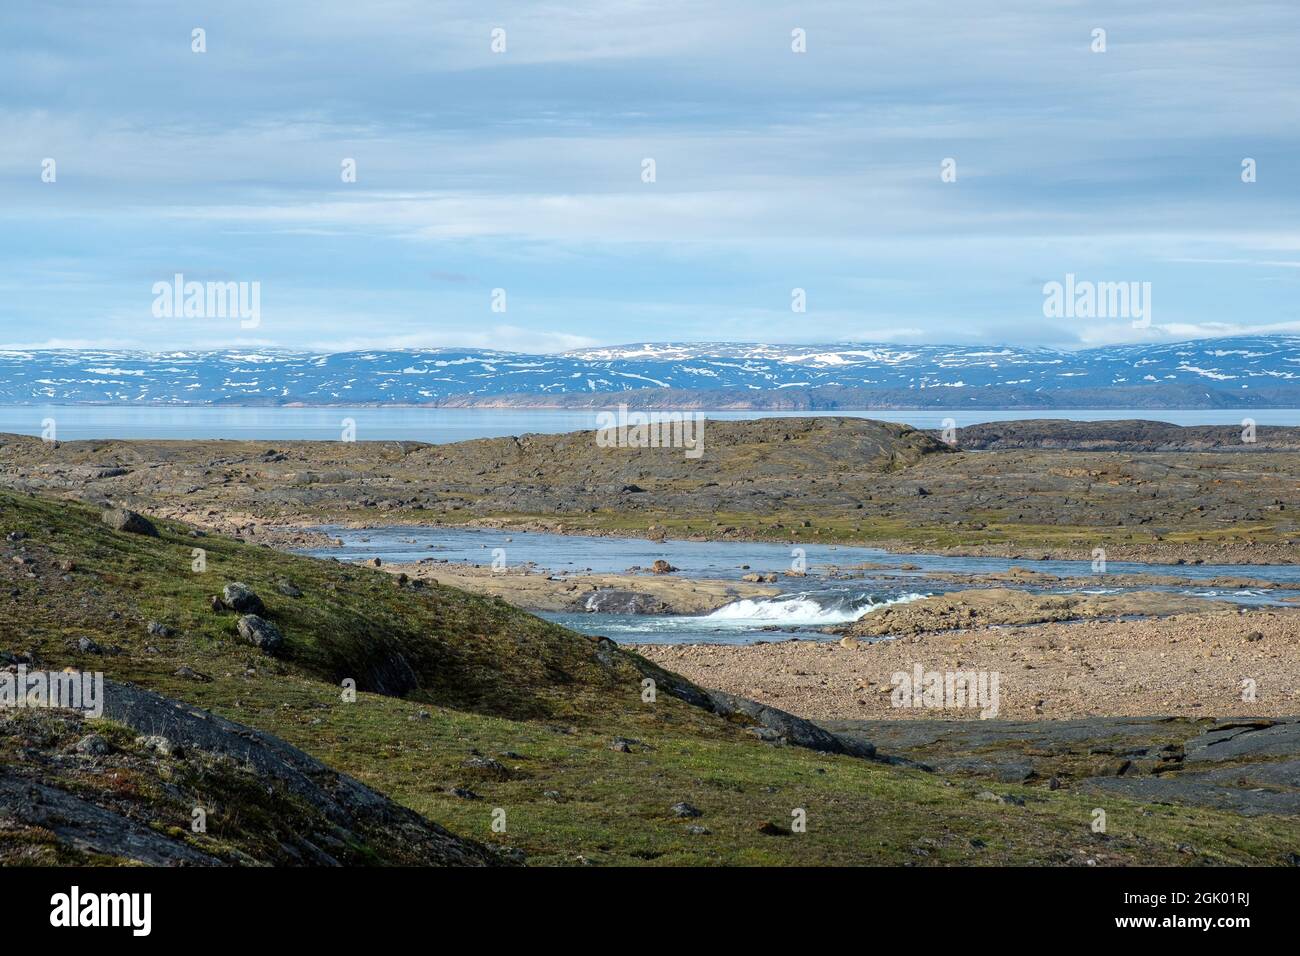 Paysages magnifiques du Nunavut - montagnes, océan, toundra Banque D'Images